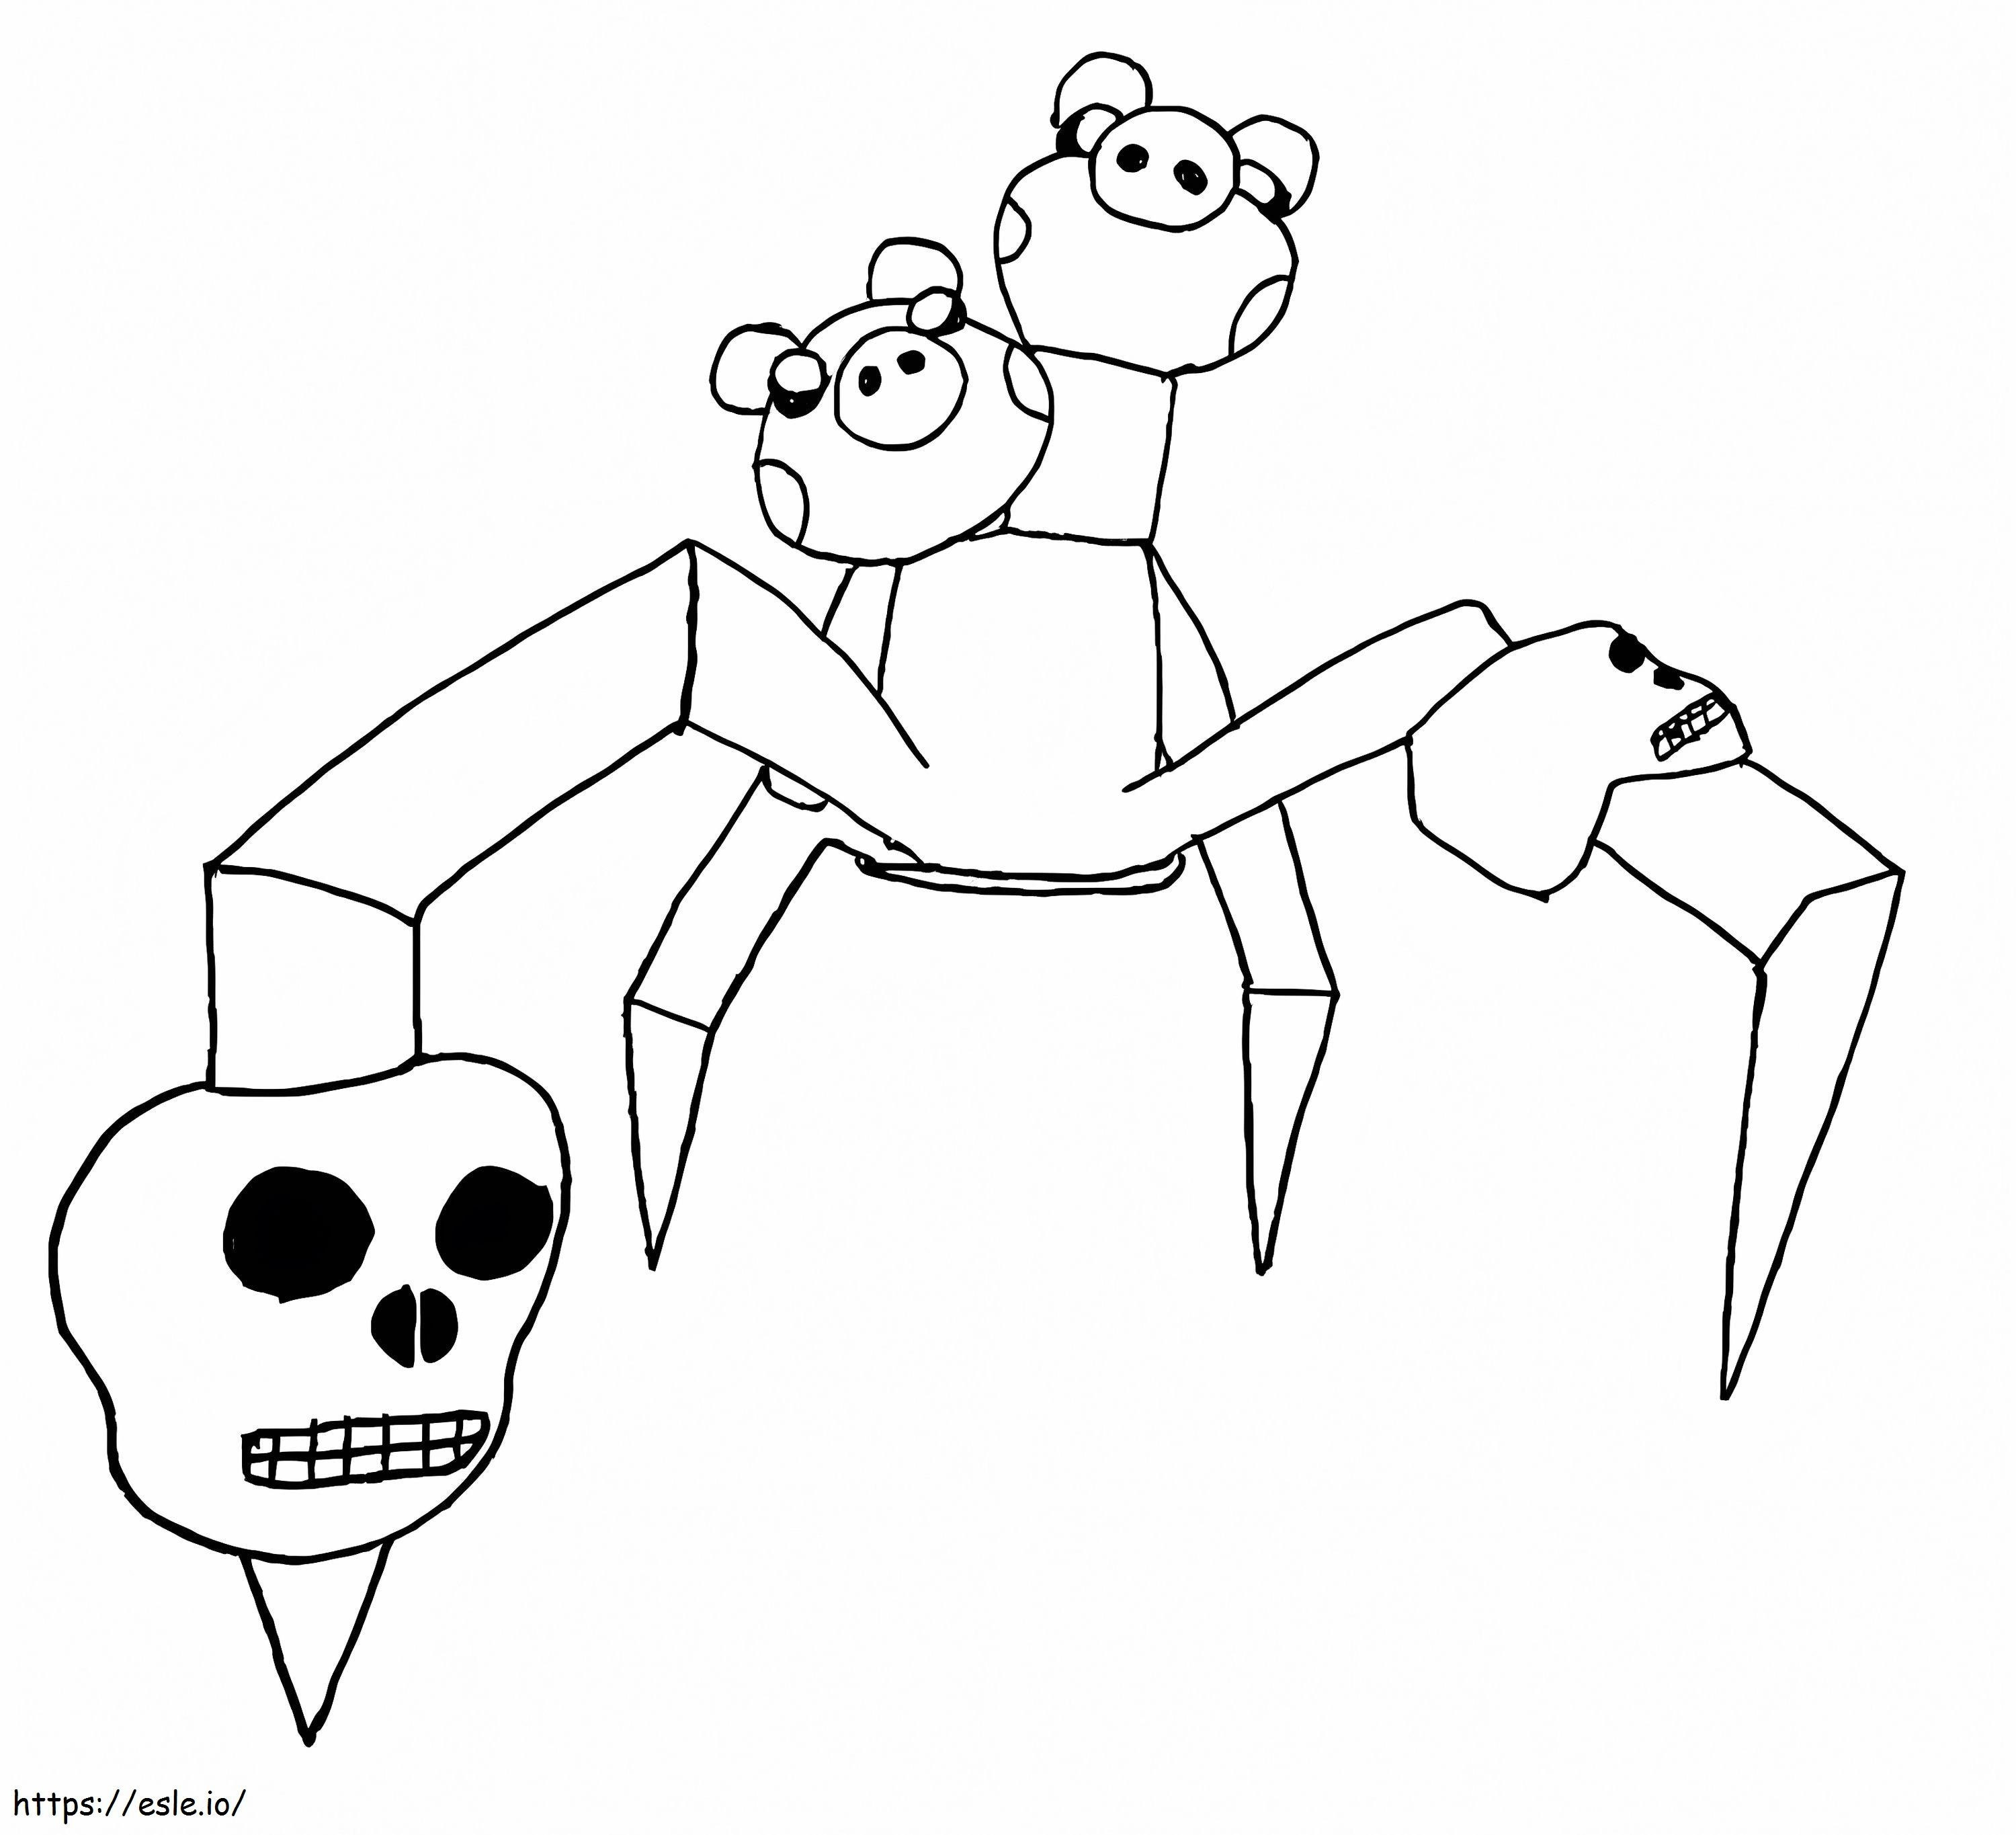 Spinnenschweinchen Roblox ausmalbilder